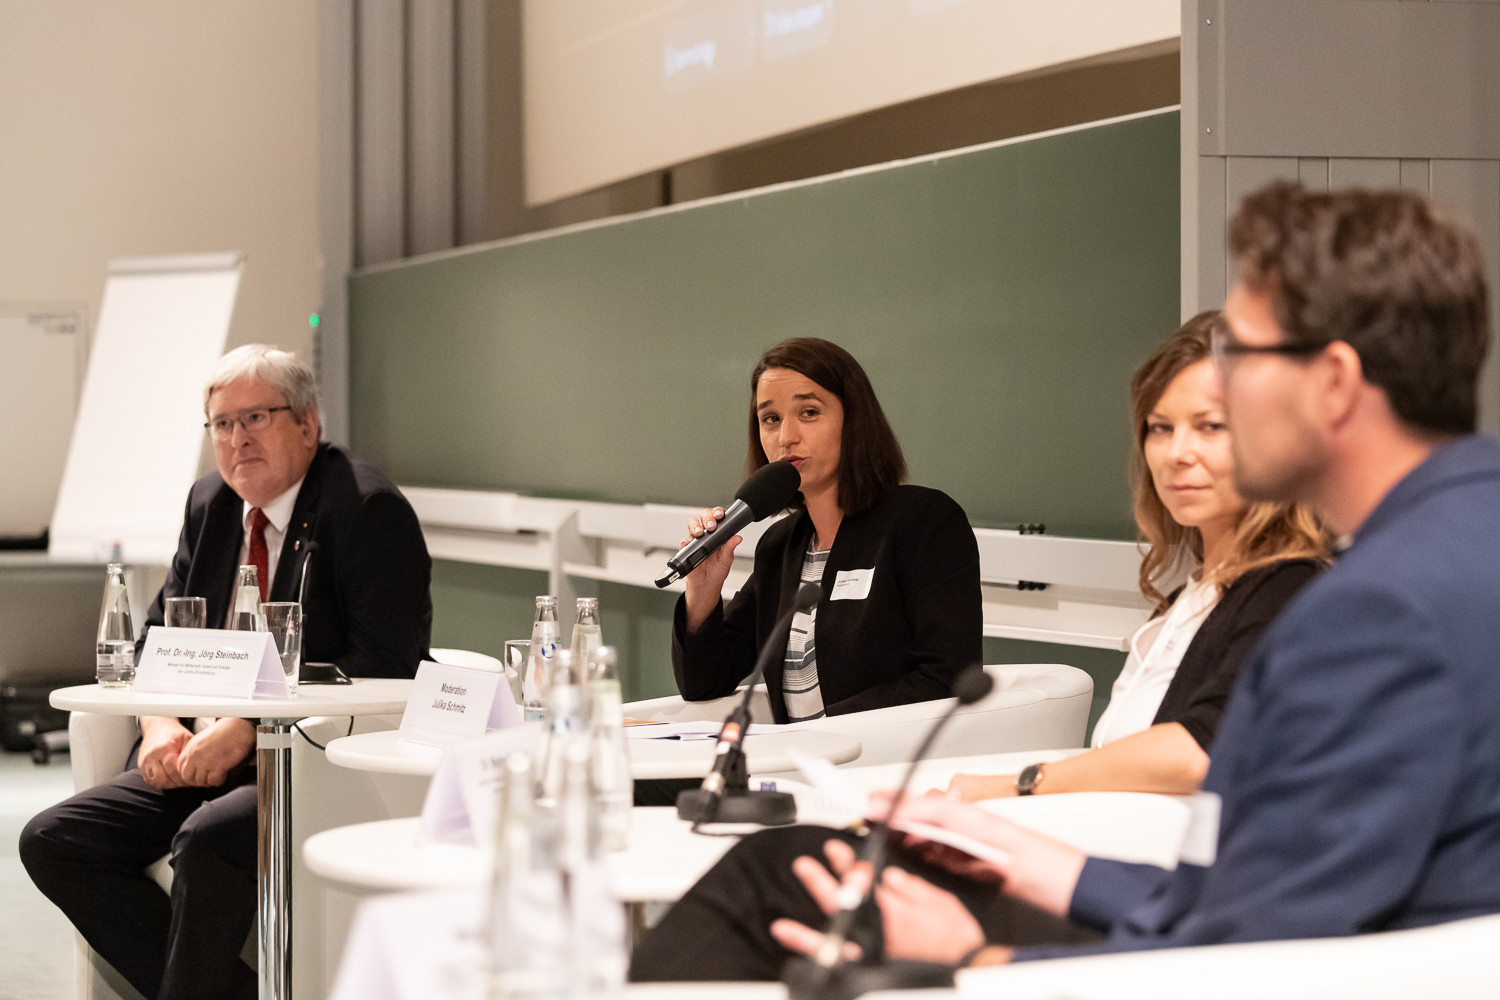 Bild: Das Bild zeigt die Podiumsdiskussion mit (von links nach rechts) Prof. Dr.-Ing. Jörg Steinbach (MWAE), Moderatorin Julika Schmitz, Dr. Marlen Meißner (UNESCO-Kommission) und Marco Bedrich (DGB).